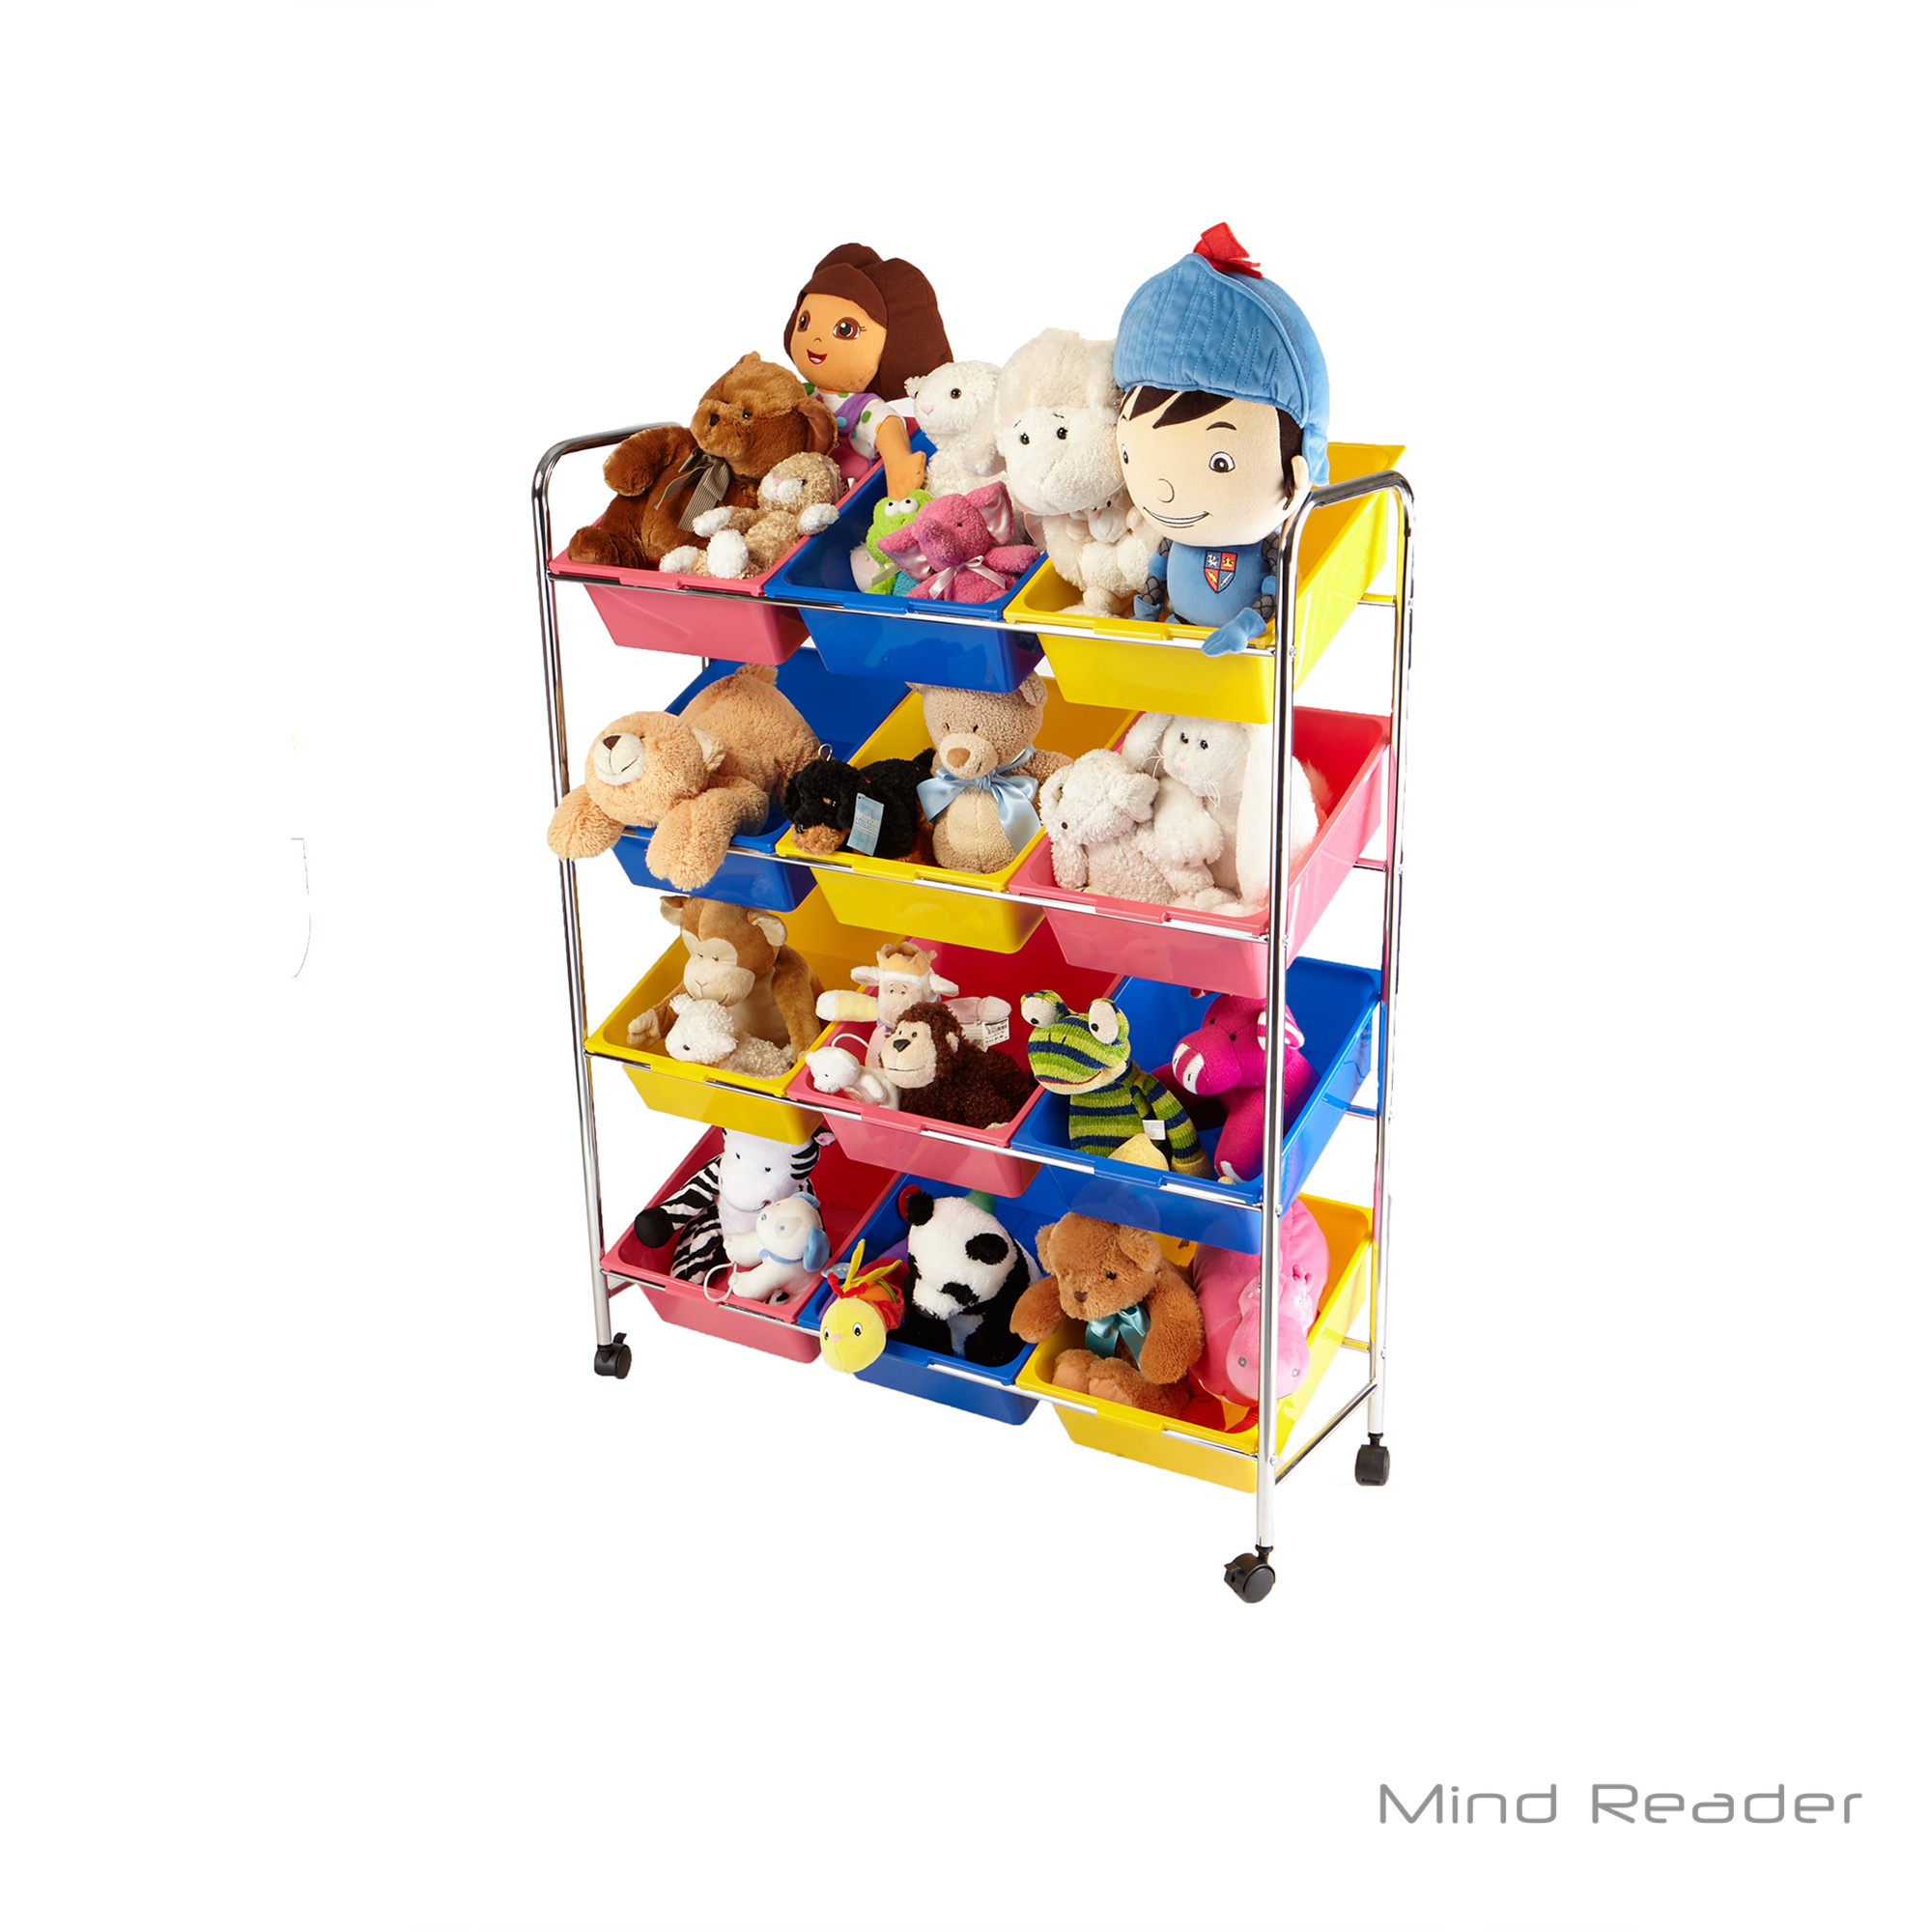 Storage Bin For Kids
 Mind Reader Toy Storage Organizer with 12 Storage Bins